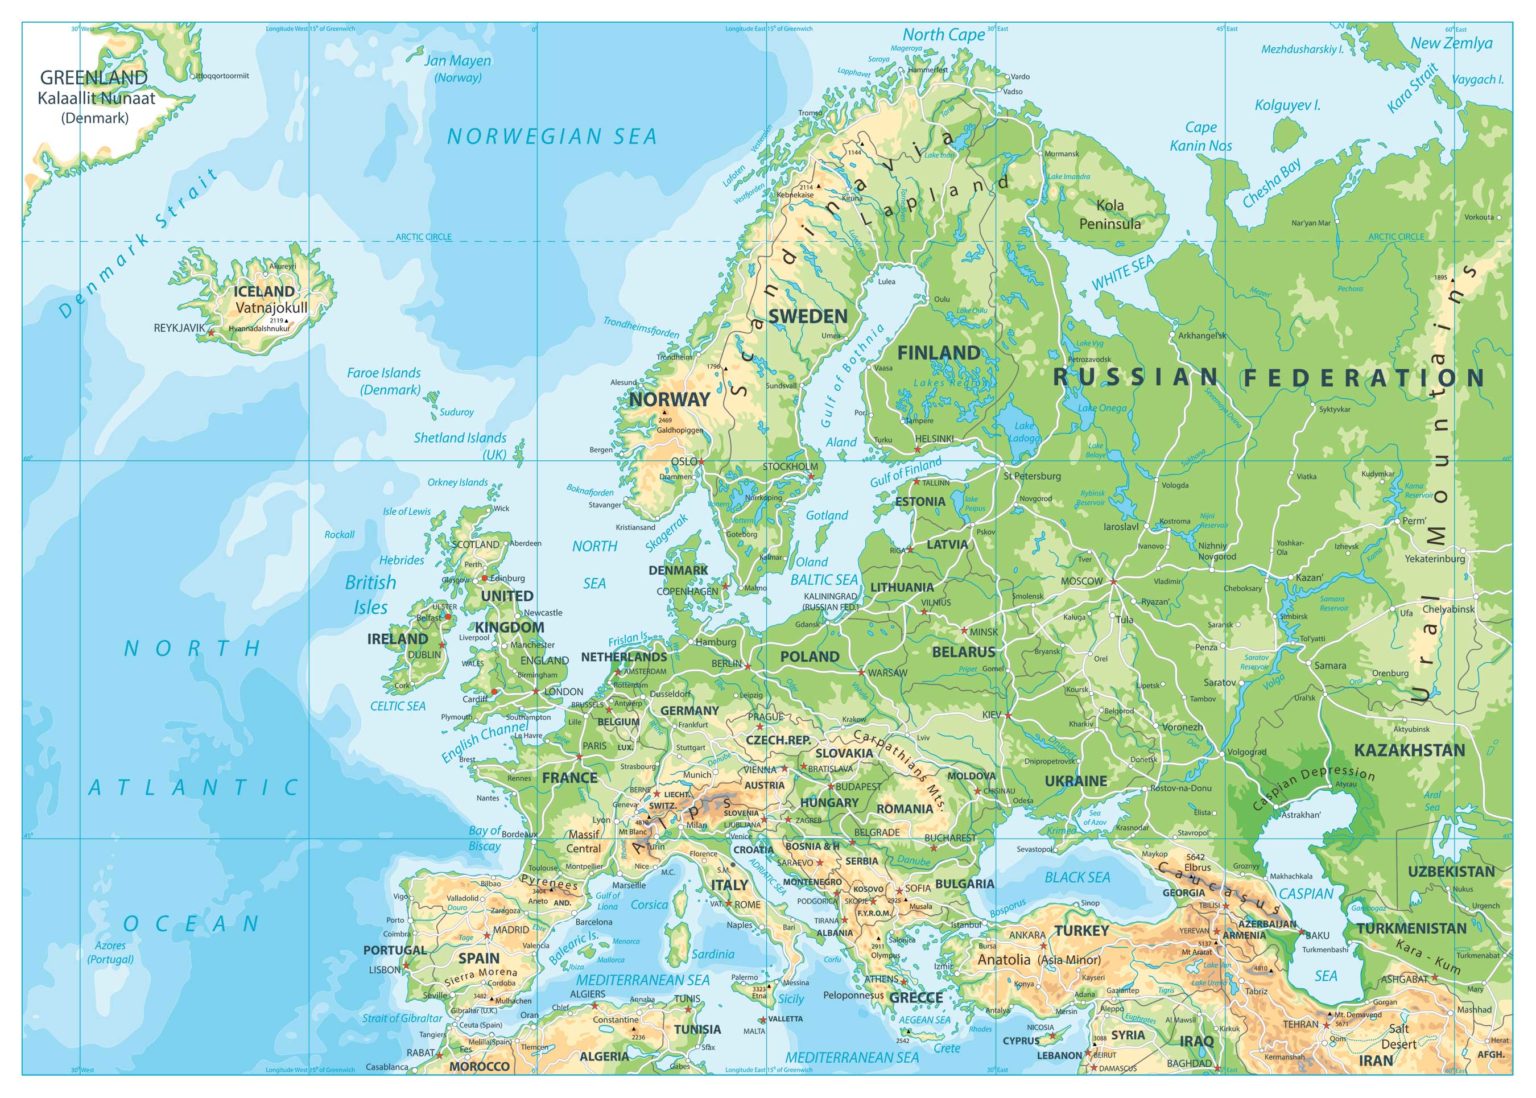 Europe Atlas Map 